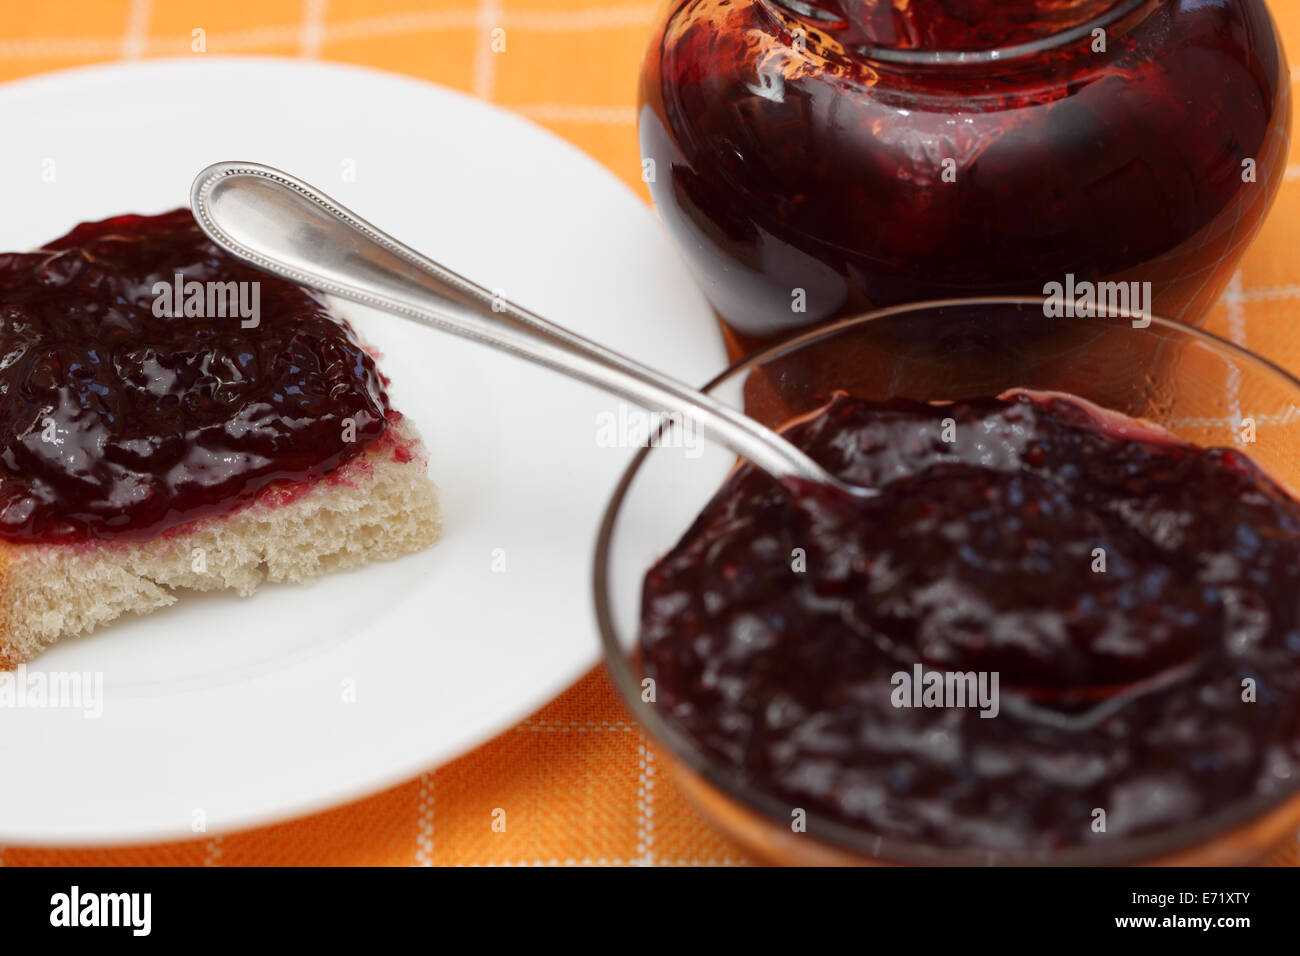 Scheibe Brot mit Marmelade auf einem Teller, Glas und Glas Schüssel mit Marmelade mit Tee-Löffel. Closeup. Stockfoto